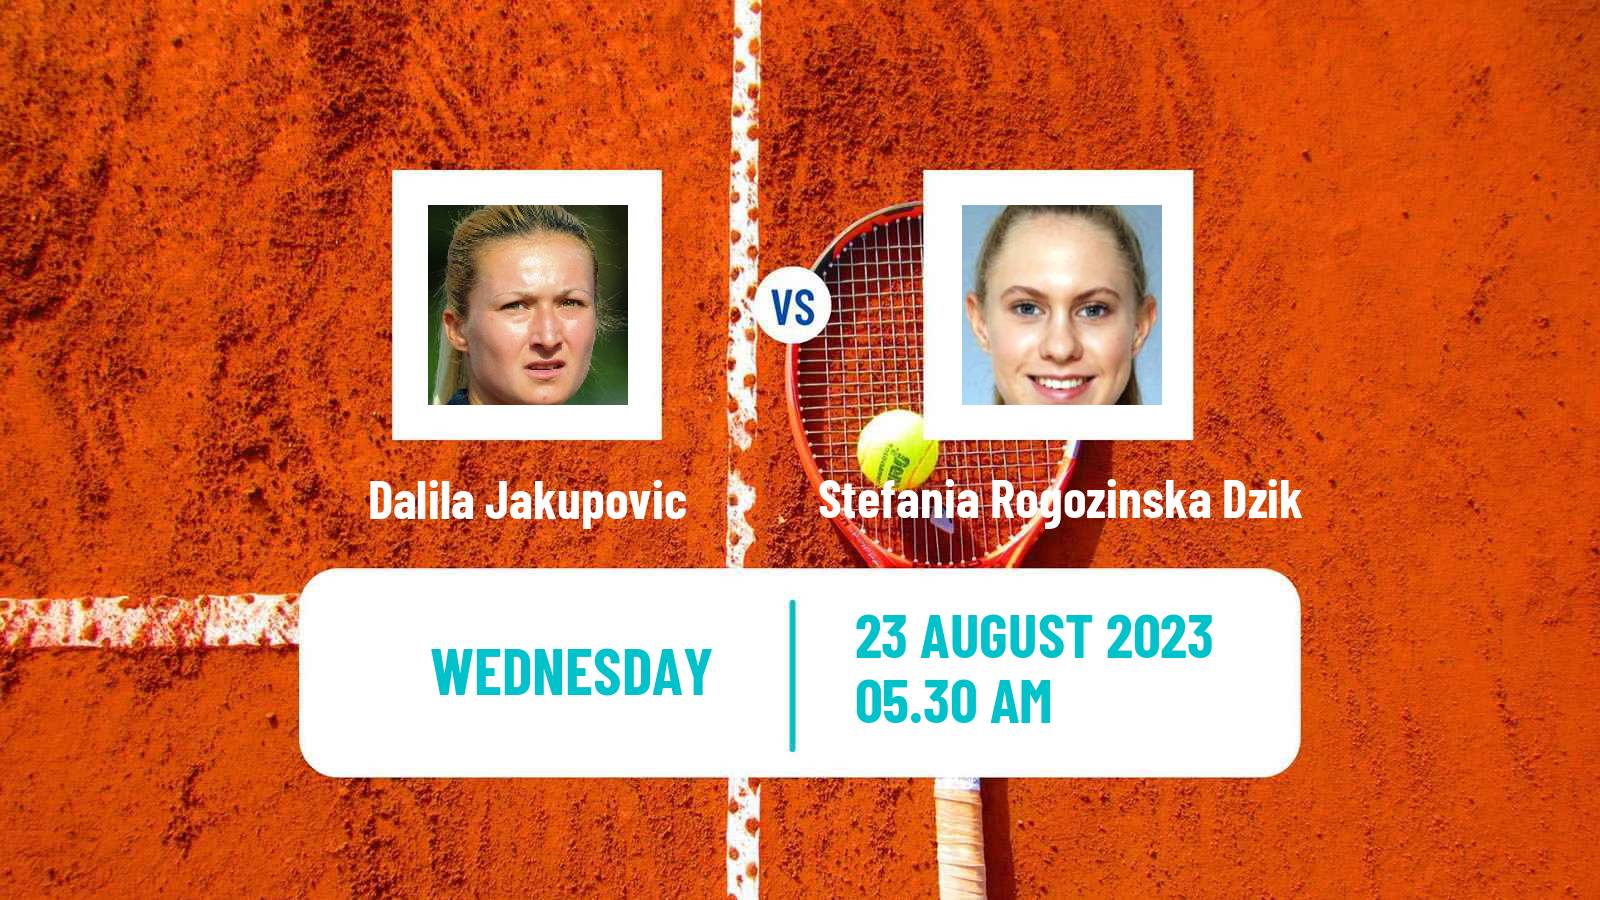 Tennis ITF W25 Bydgoszcz Women Dalila Jakupovic - Stefania Rogozinska Dzik